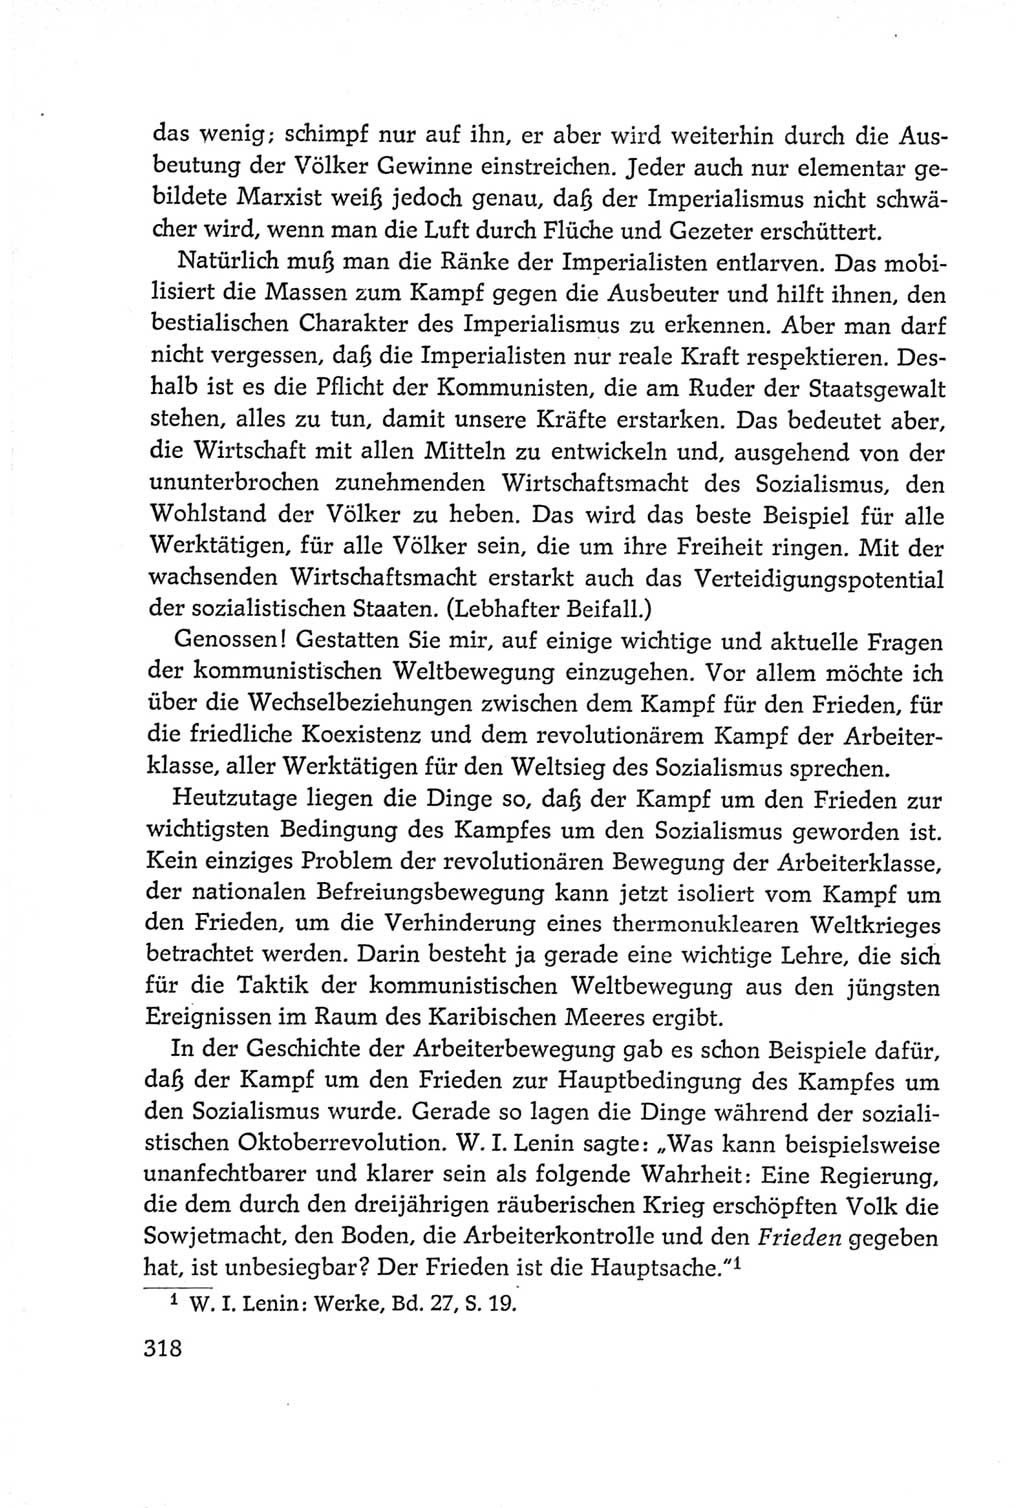 Protokoll der Verhandlungen des Ⅵ. Parteitages der Sozialistischen Einheitspartei Deutschlands (SED) [Deutsche Demokratische Republik (DDR)] 1963, Band Ⅰ, Seite 318 (Prot. Verh. Ⅵ. PT SED DDR 1963, Bd. Ⅰ, S. 318)